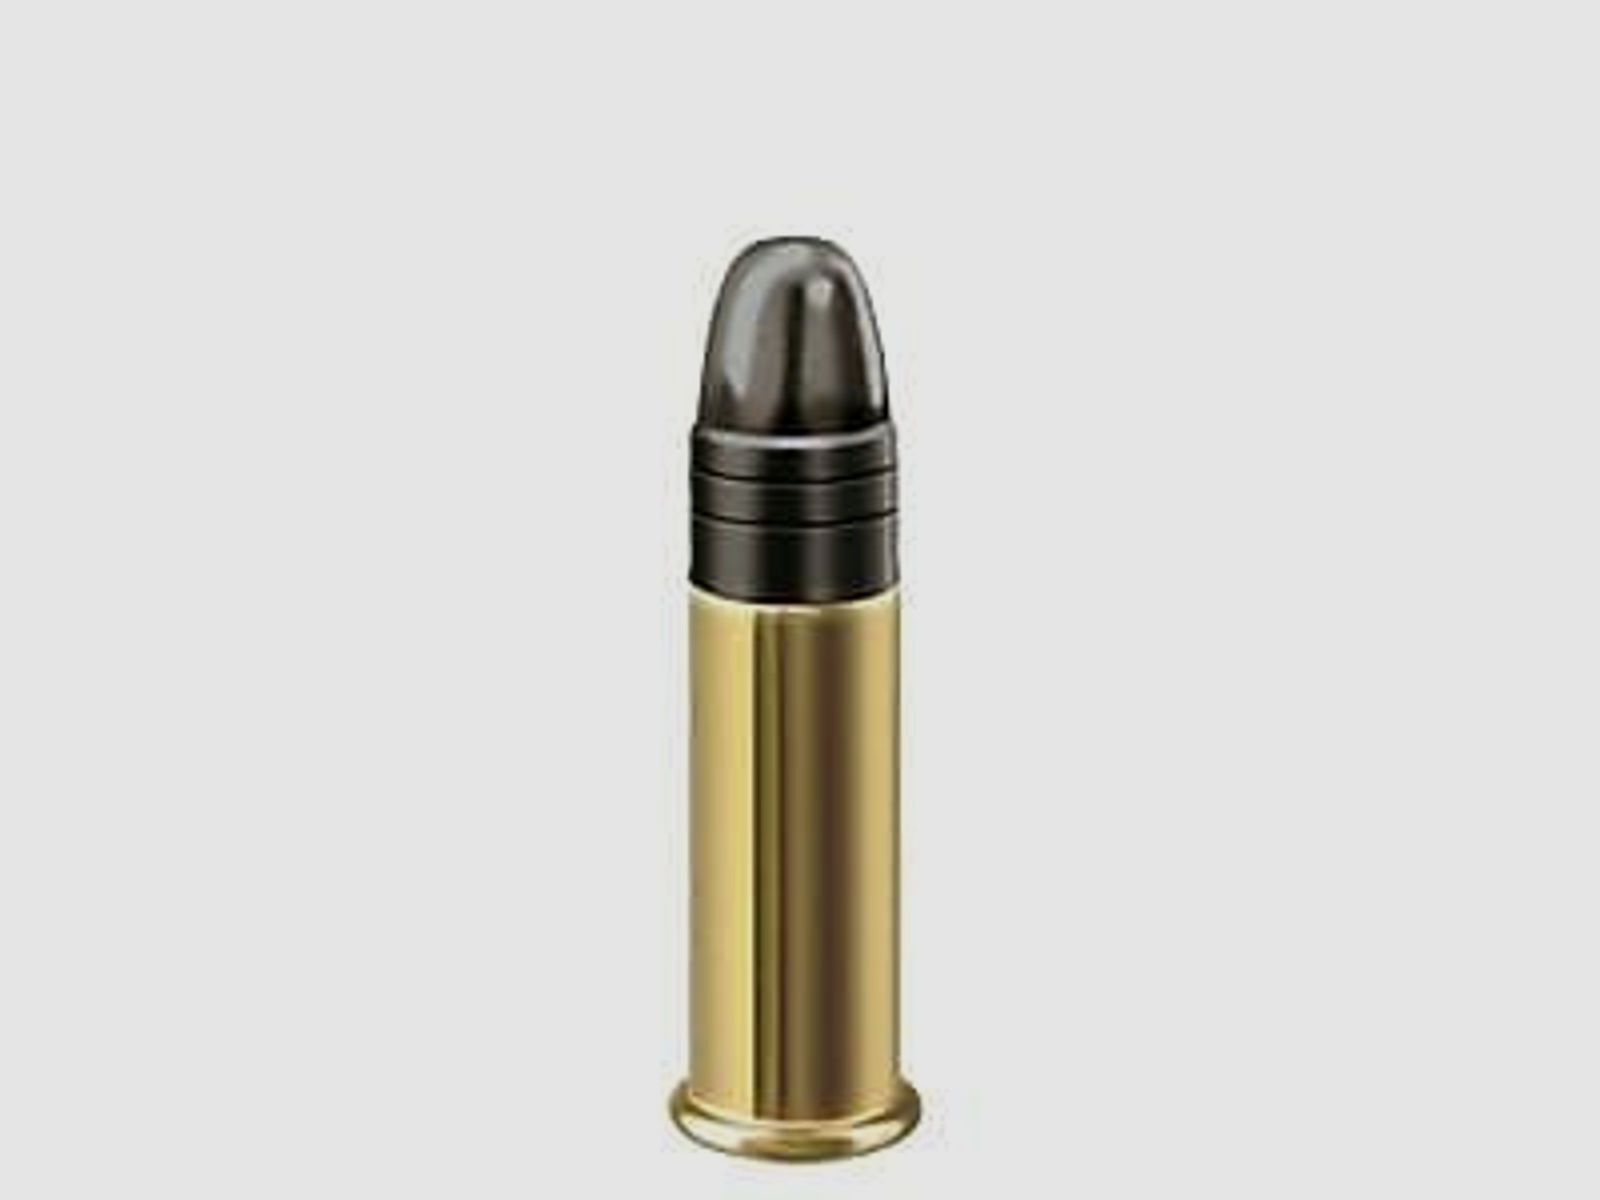 RWS KK-Munition .22lr R50 50 Stk  Premium Line